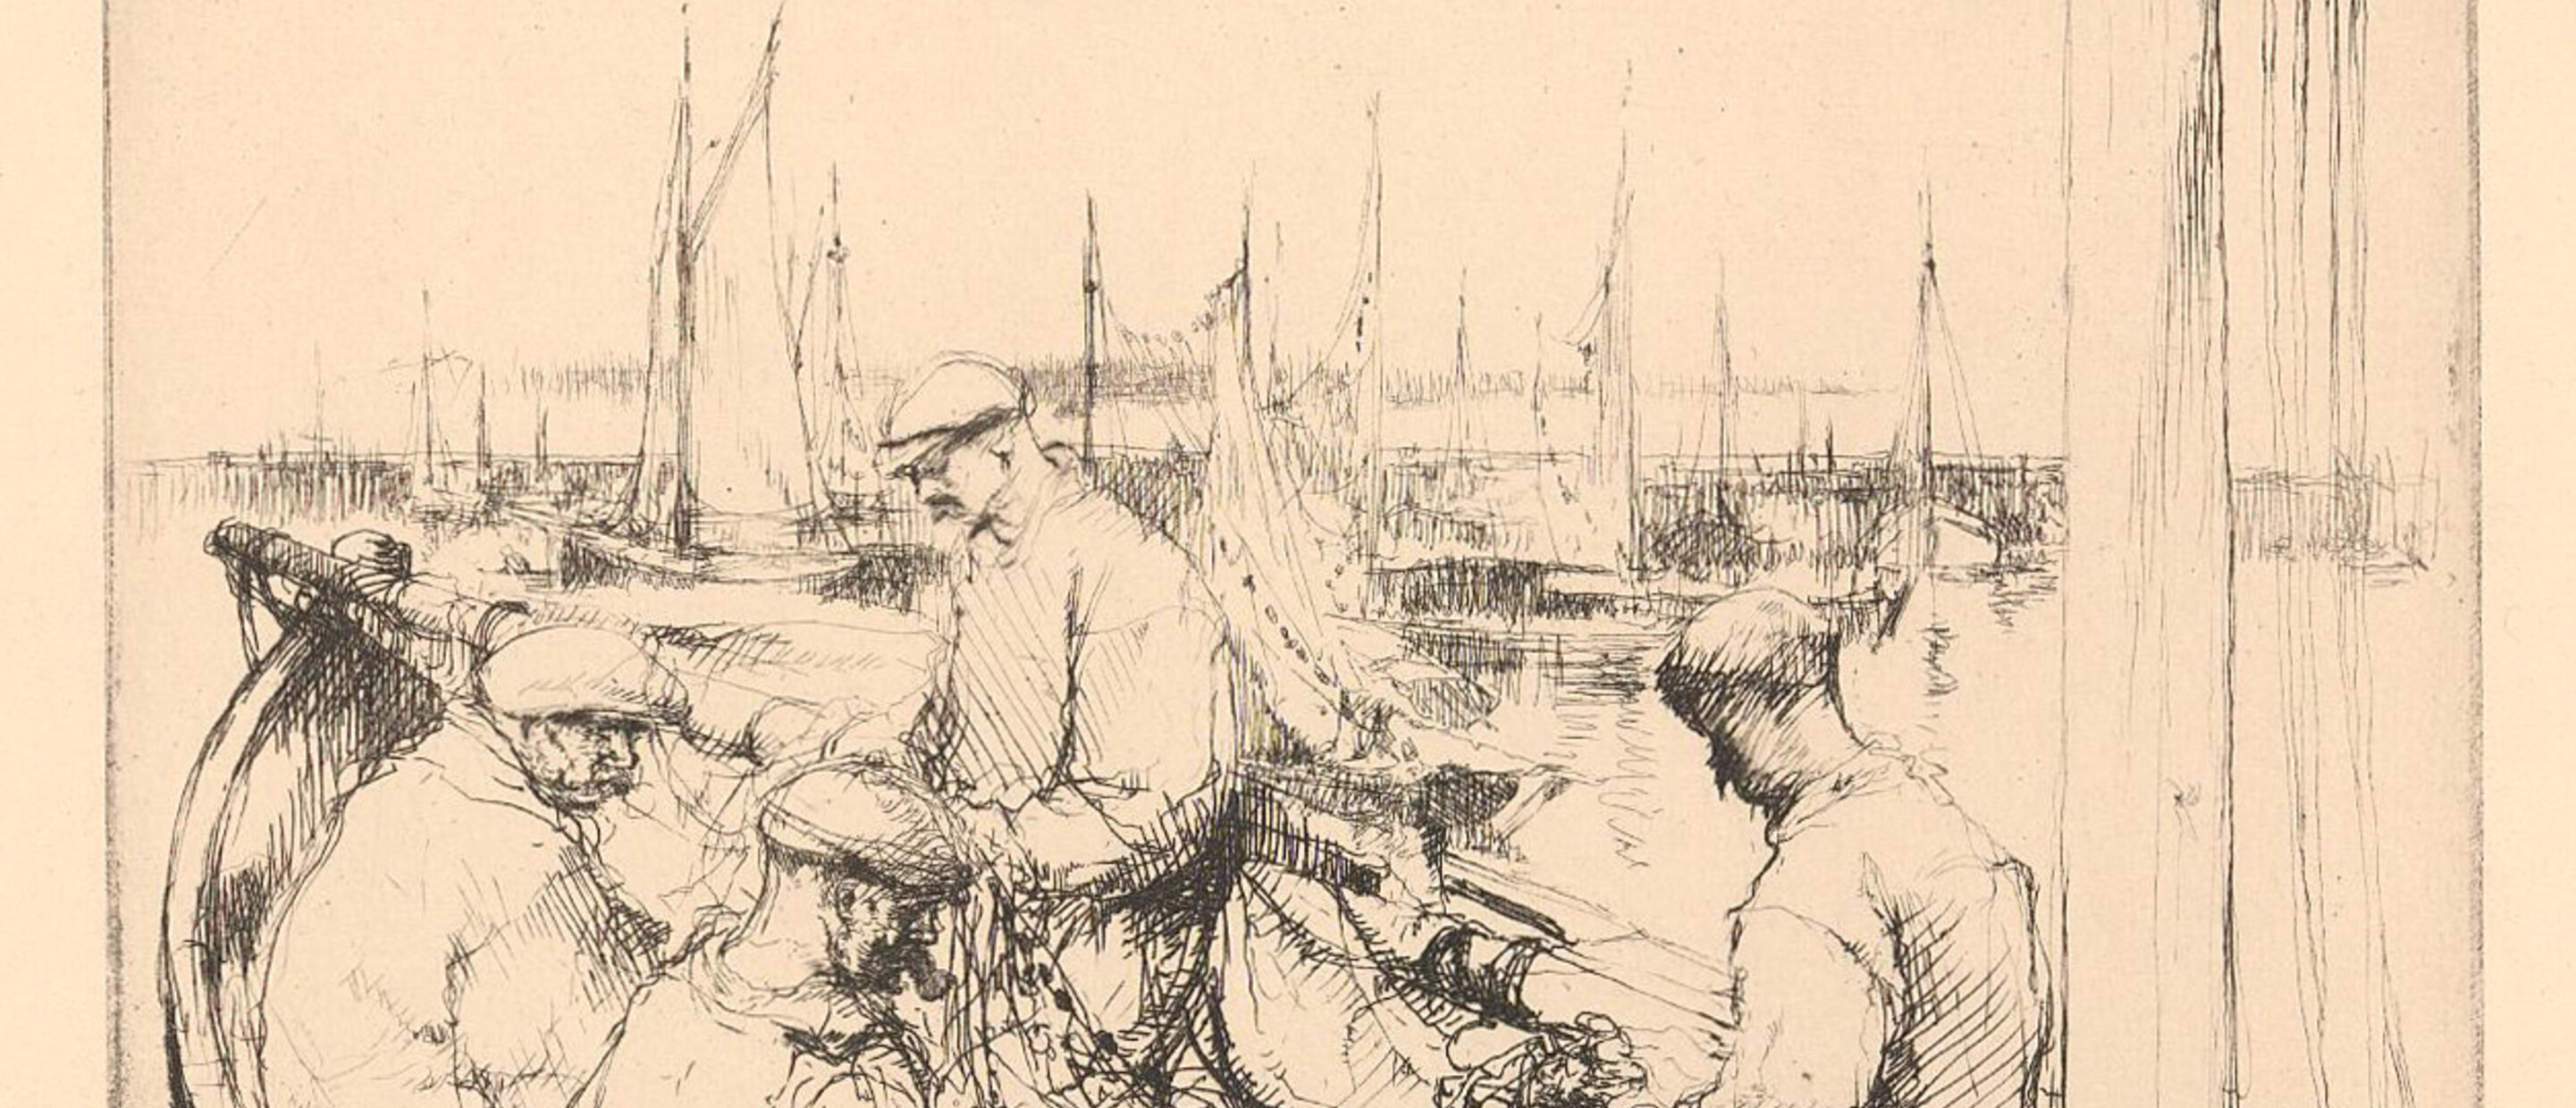 men mending fish nets on boat